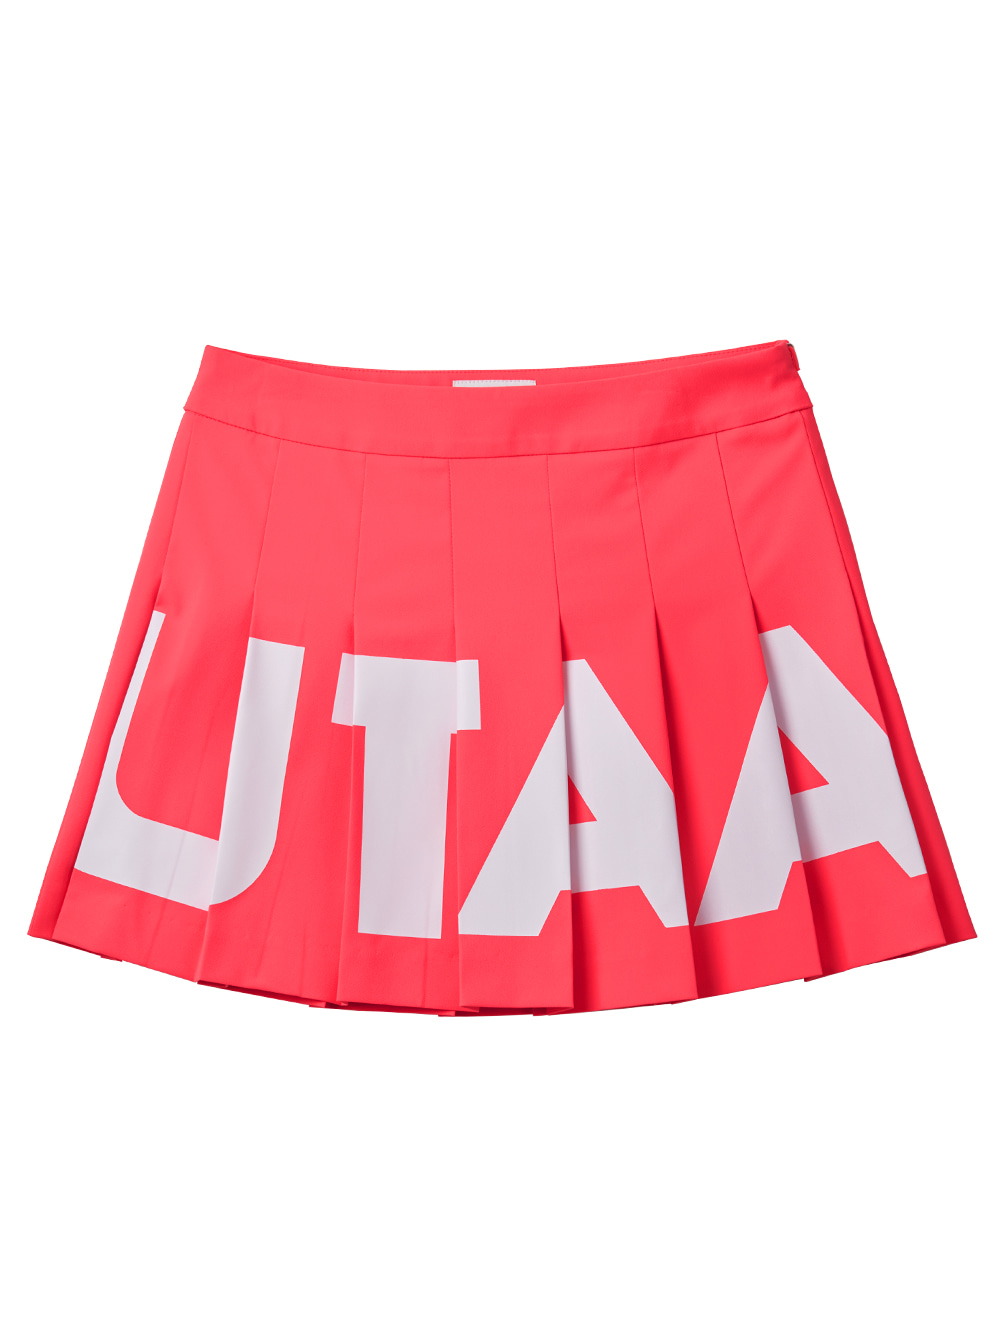 UTAA Bold Neon Skirt : Pink (UB3SKF531PK)